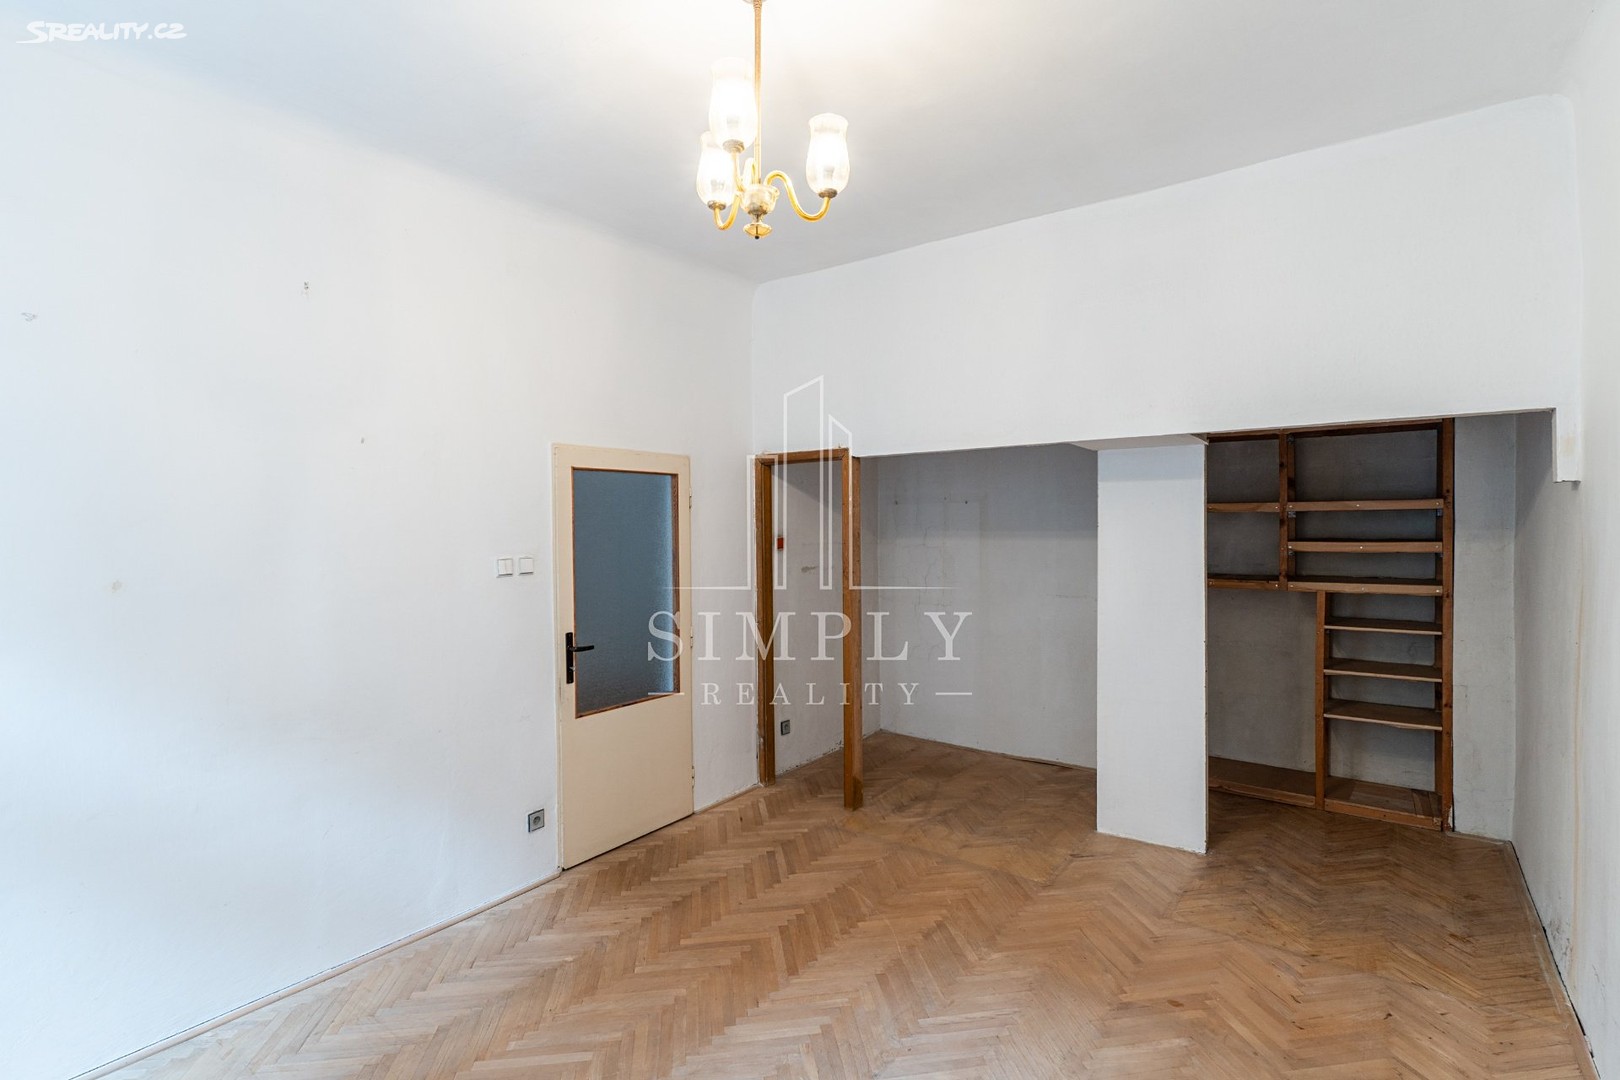 Prodej bytu 3+kk 69 m², Na Bojišti, Praha 2 - Nové Město